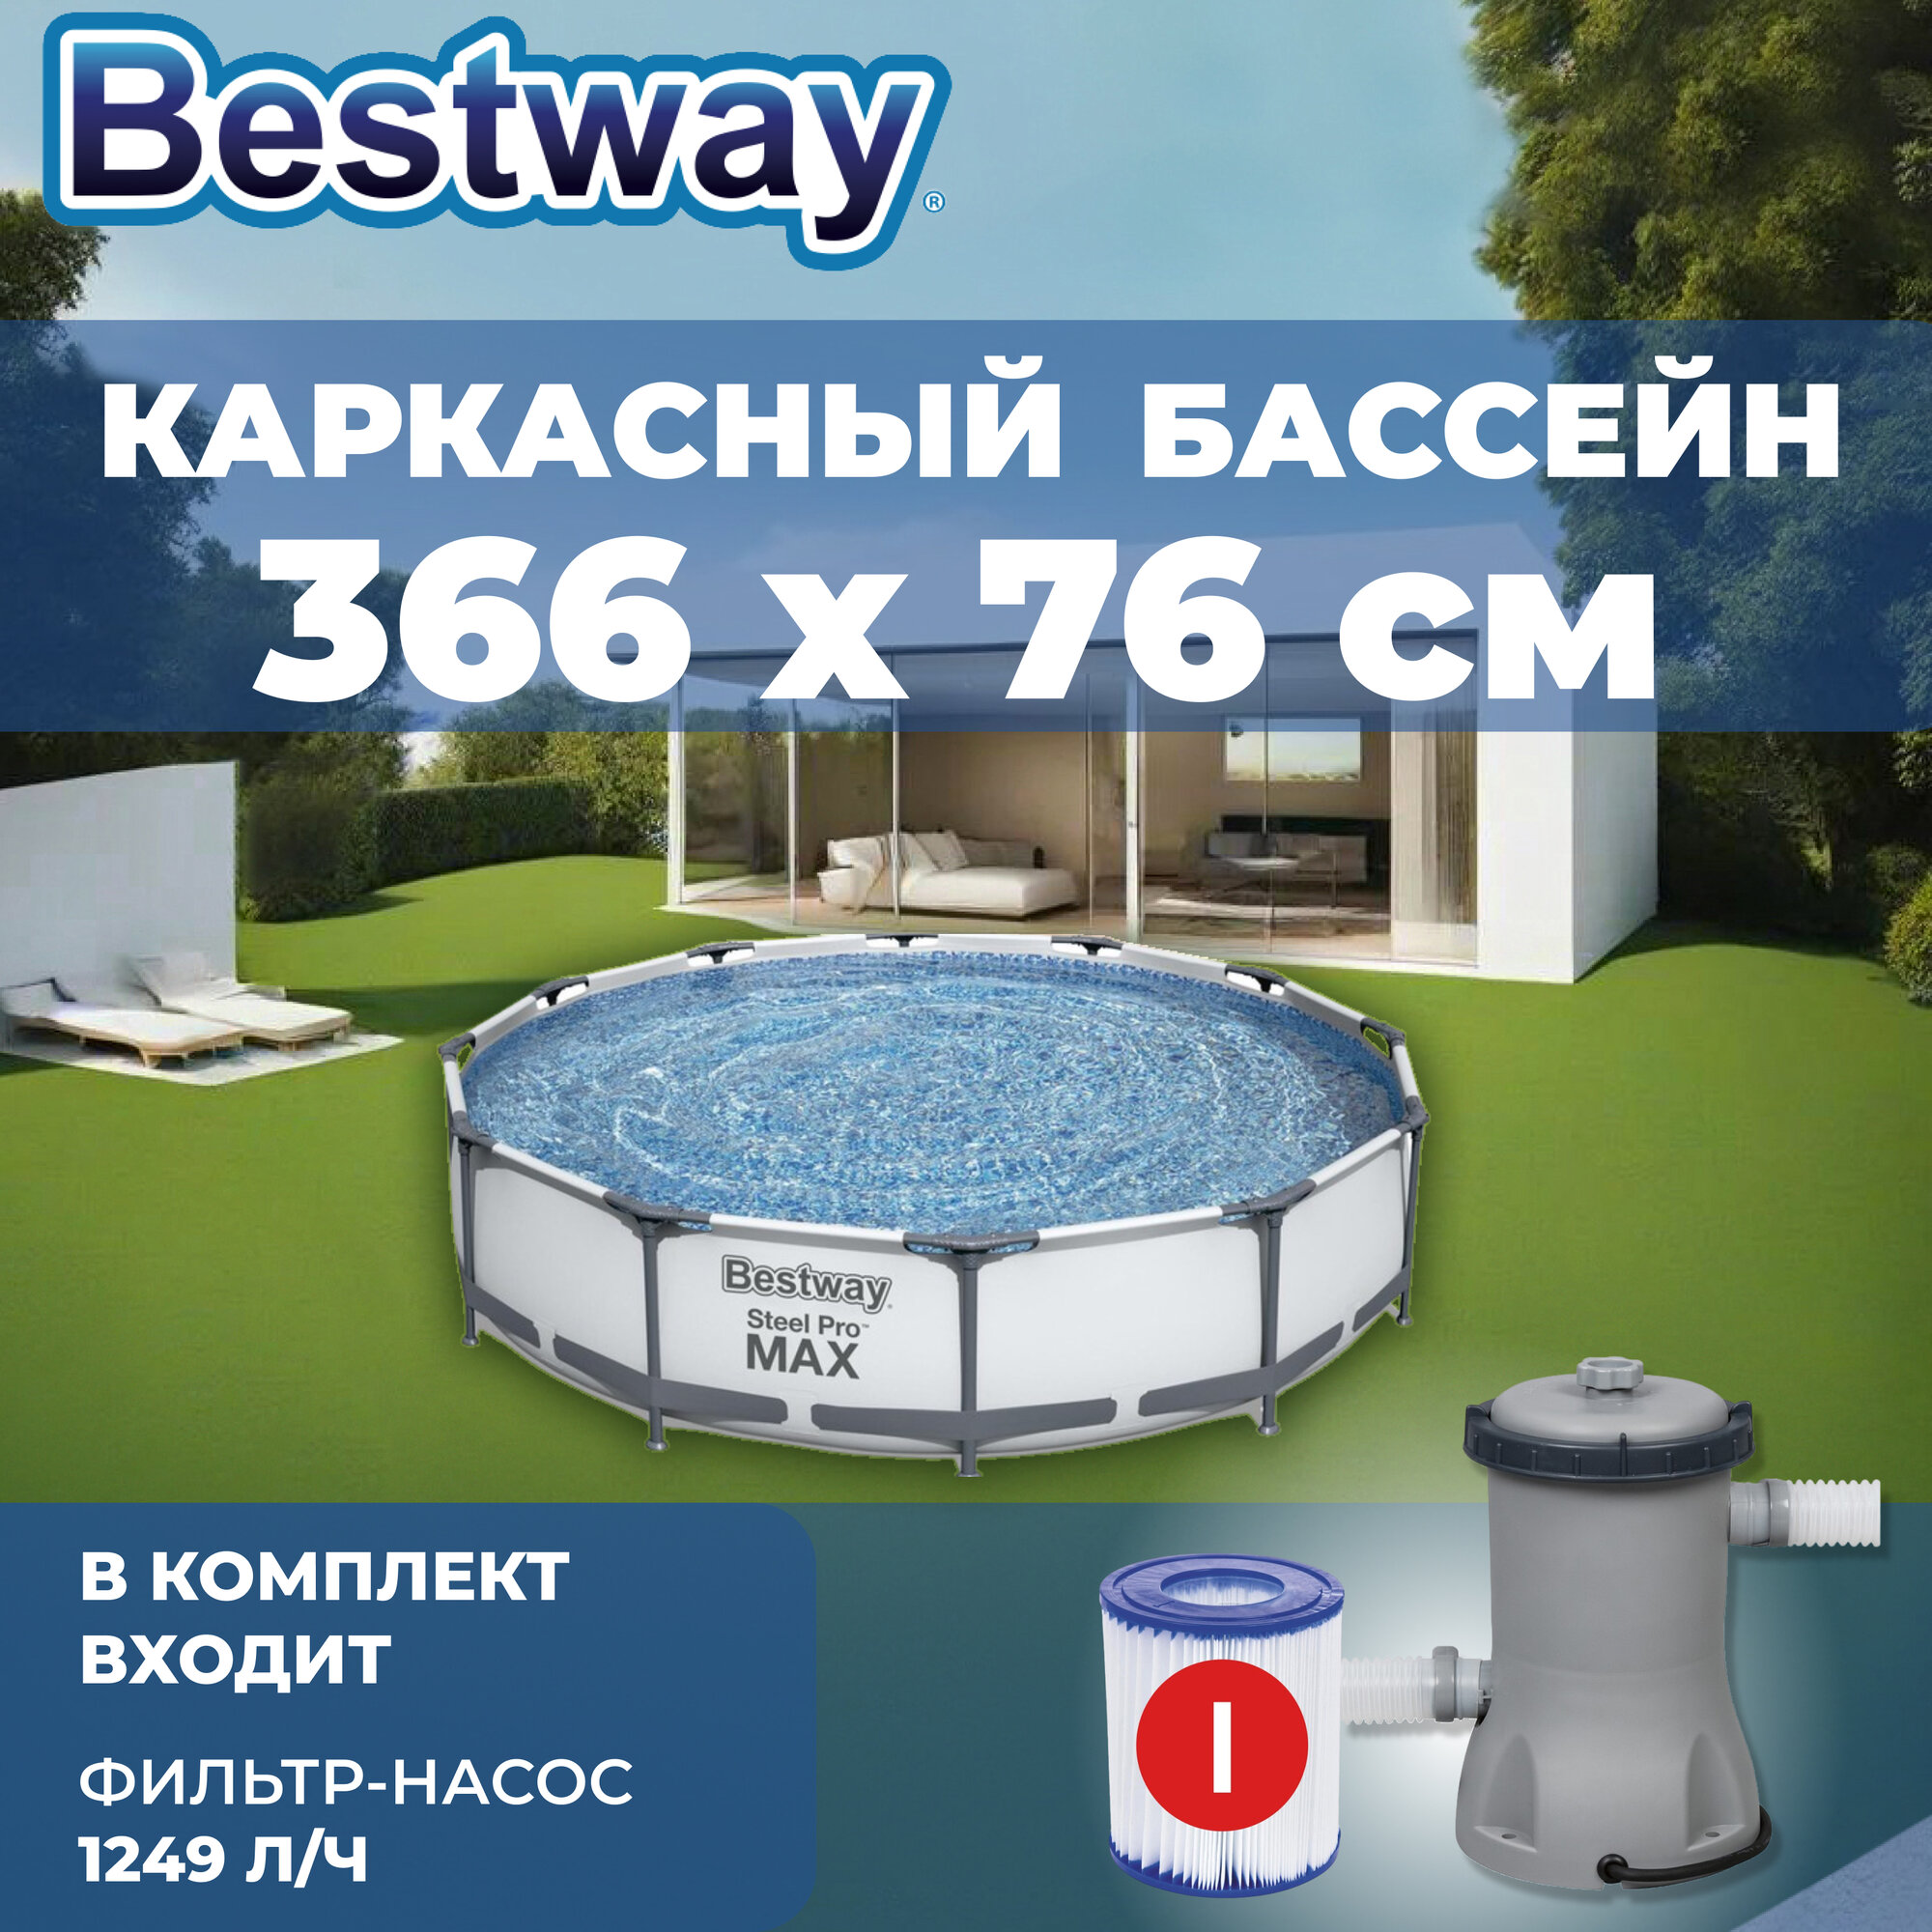 Бассейн каркасный Bestway Steel Pro MAX, 366 х 76 см, фильтр-насос